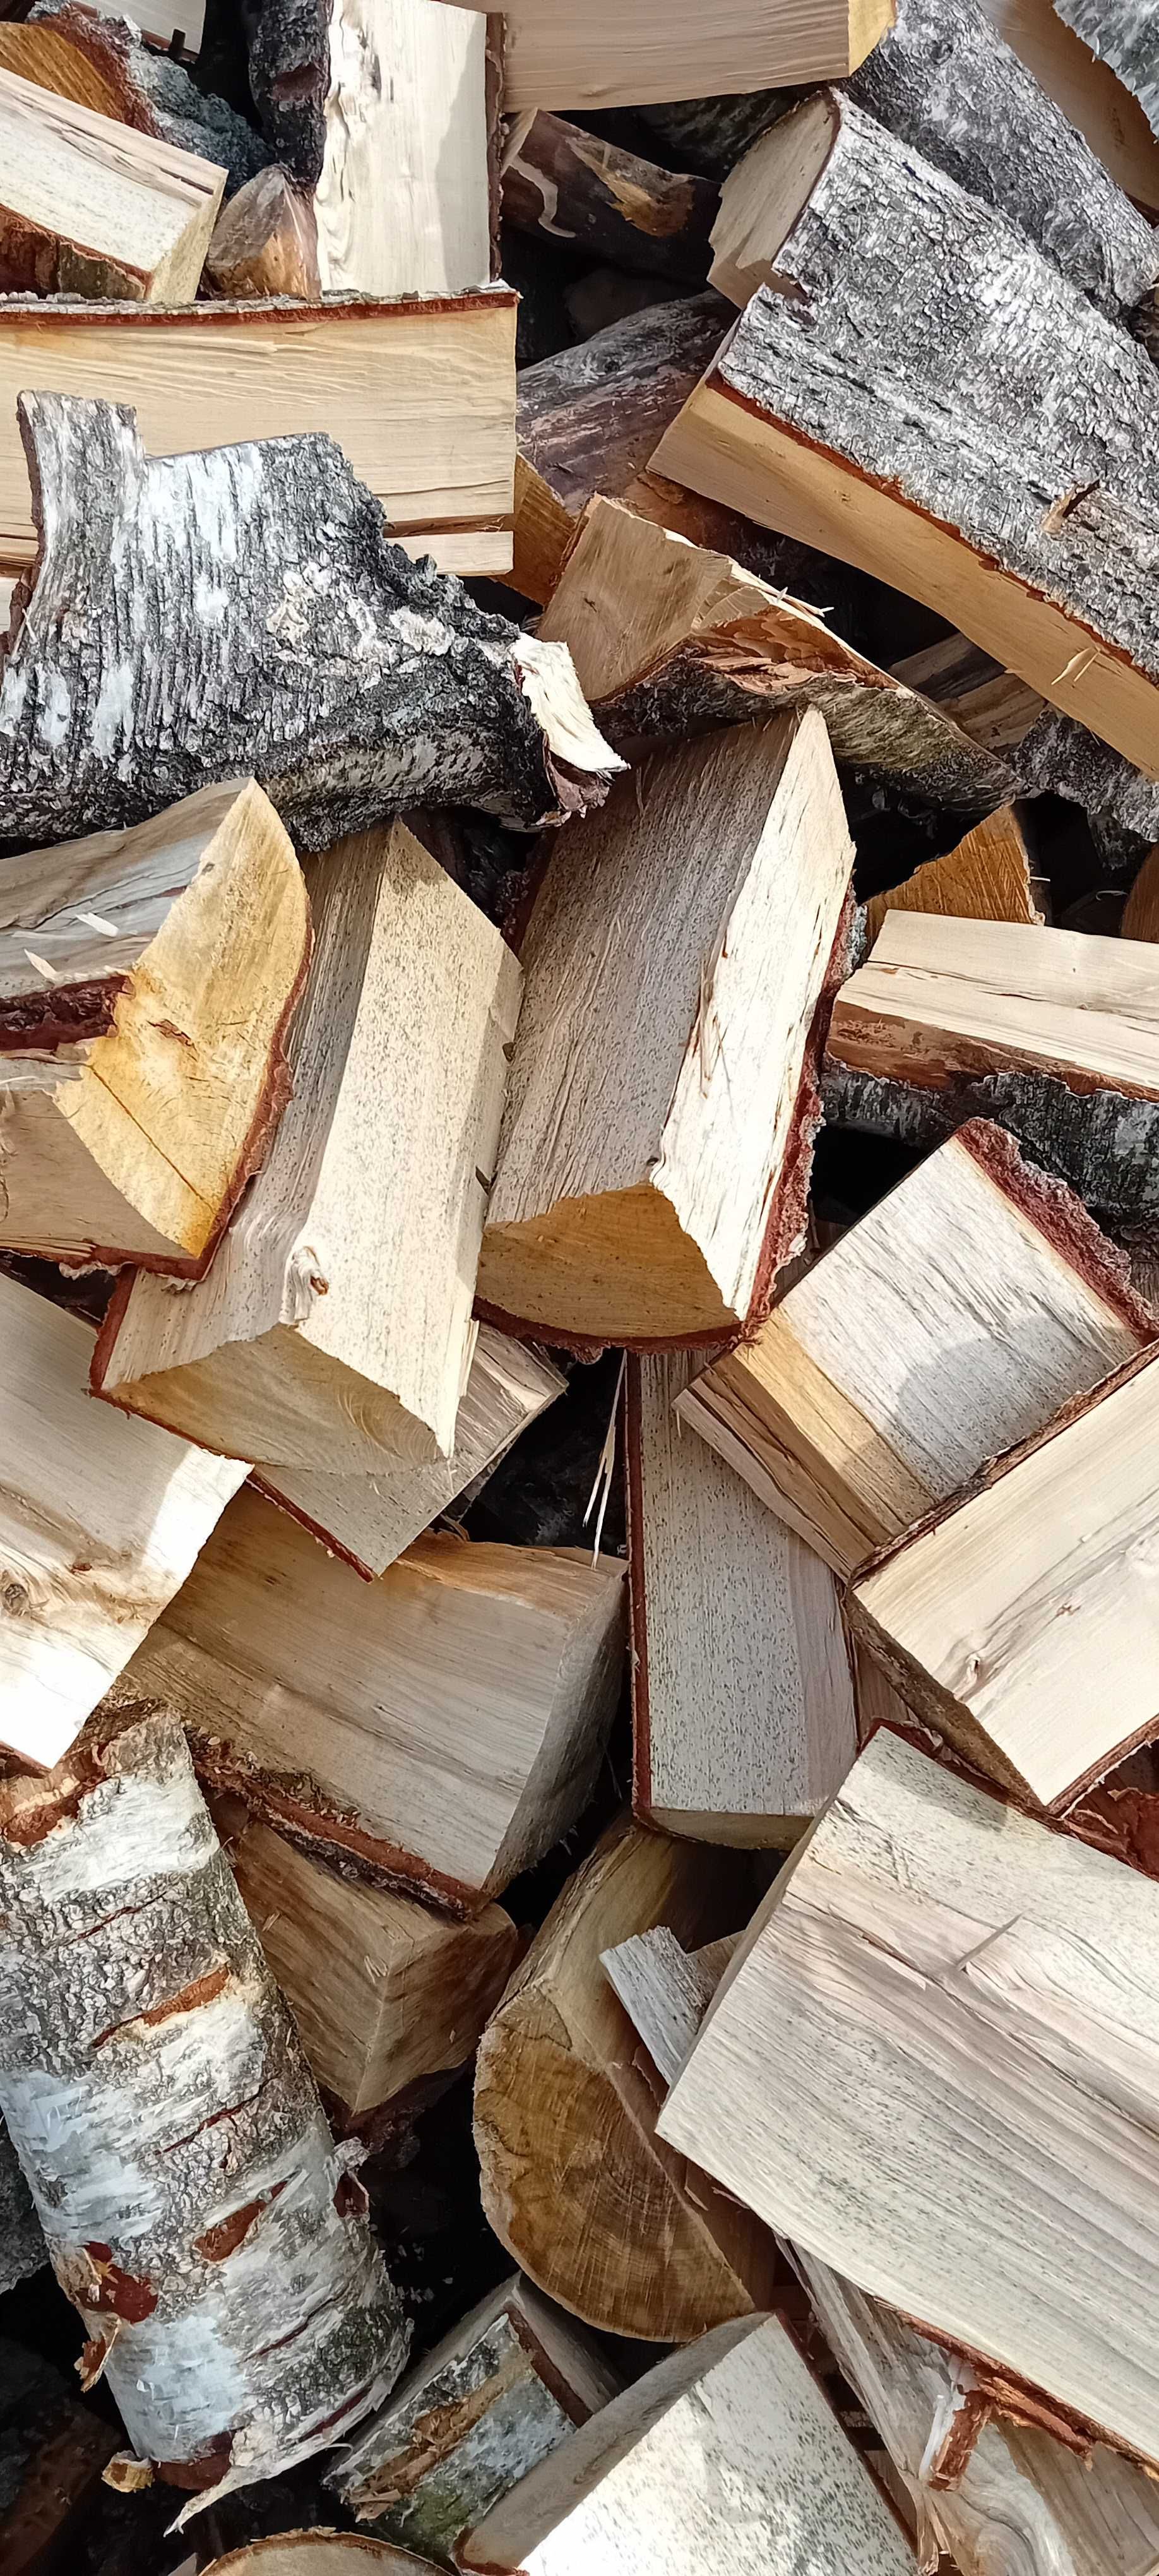 Drewno opałowe I I zapraszam zapraszam